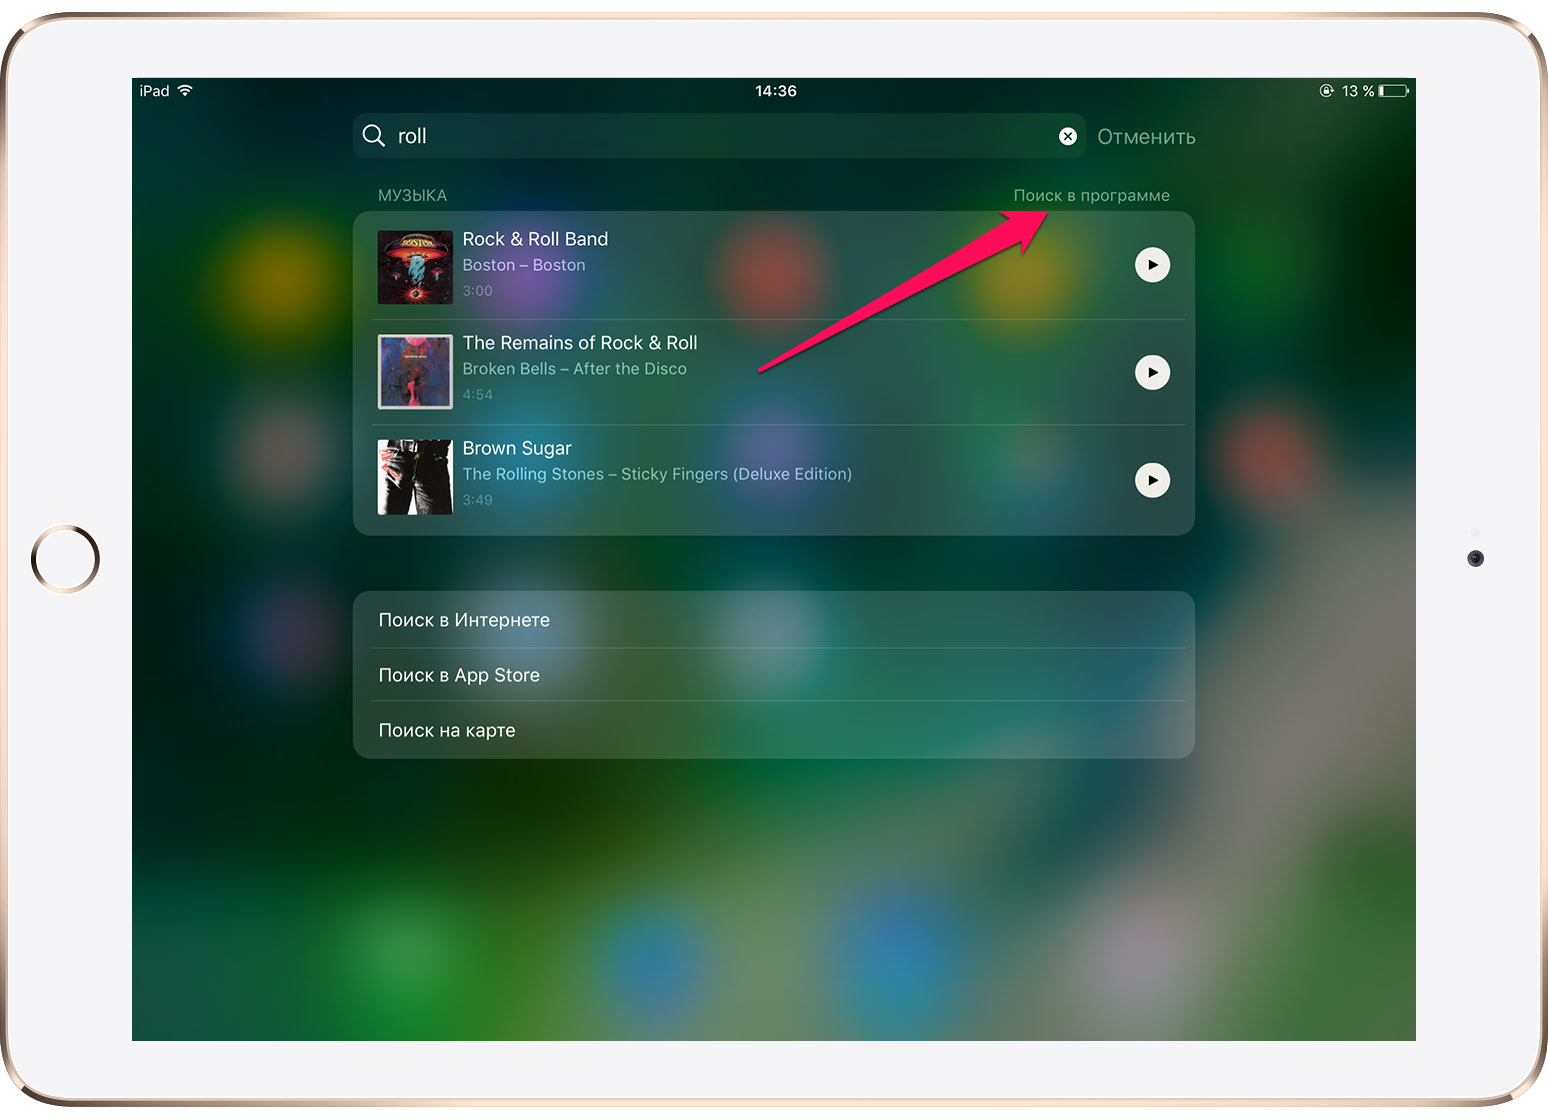 Как выполнять быстрый поиск в приложении при помощи Spotlight на iPhone и iPad